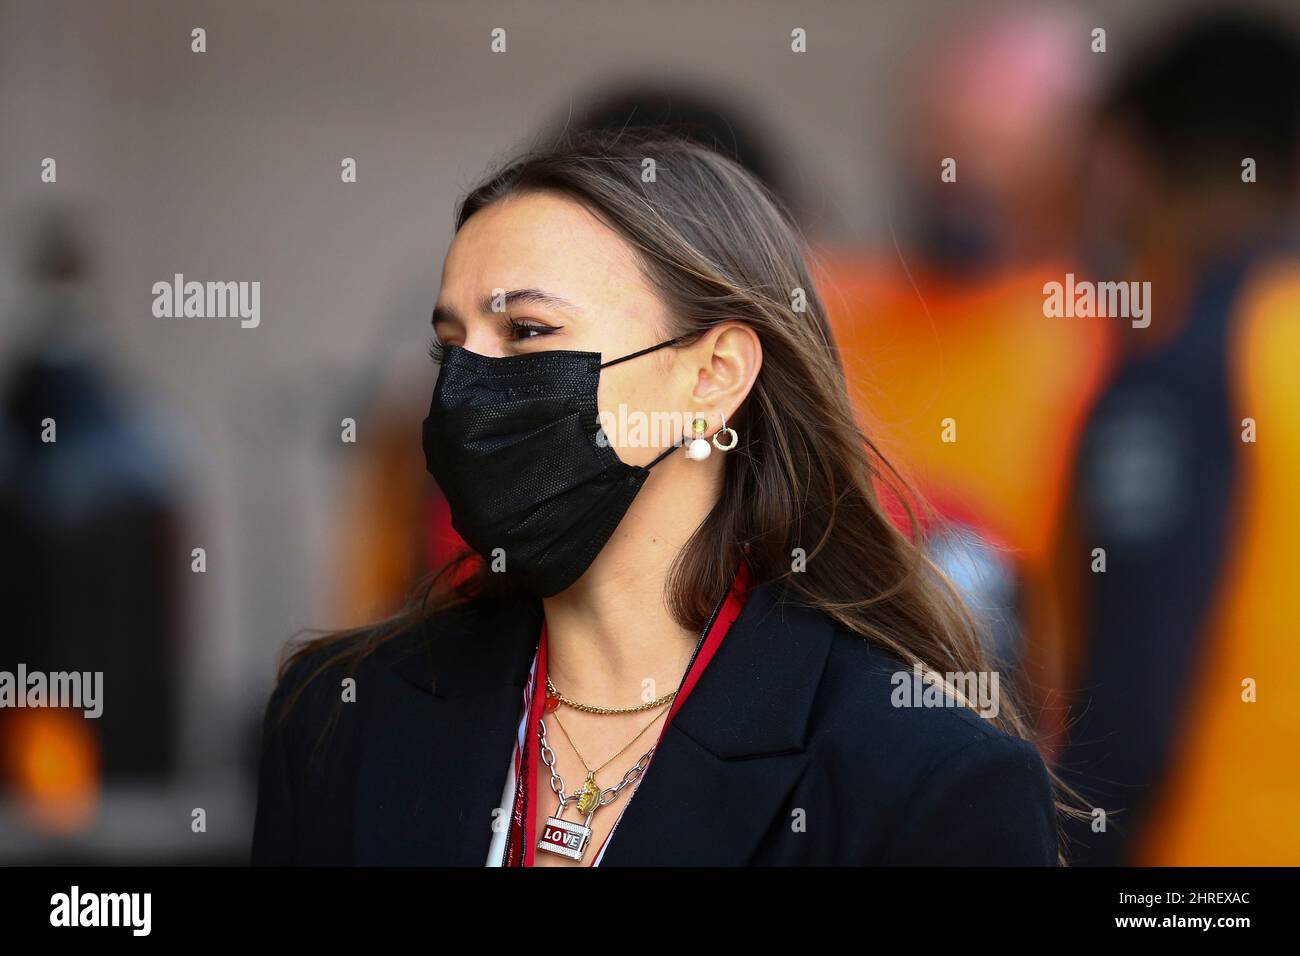 Charlotte Sinè, petite amie de Charles Leclerc, Ferrari pendant les journées d'essais d'hiver, Barcelone 23-25 février 2022, Championnat du monde de Formule 1 2022. Banque D'Images